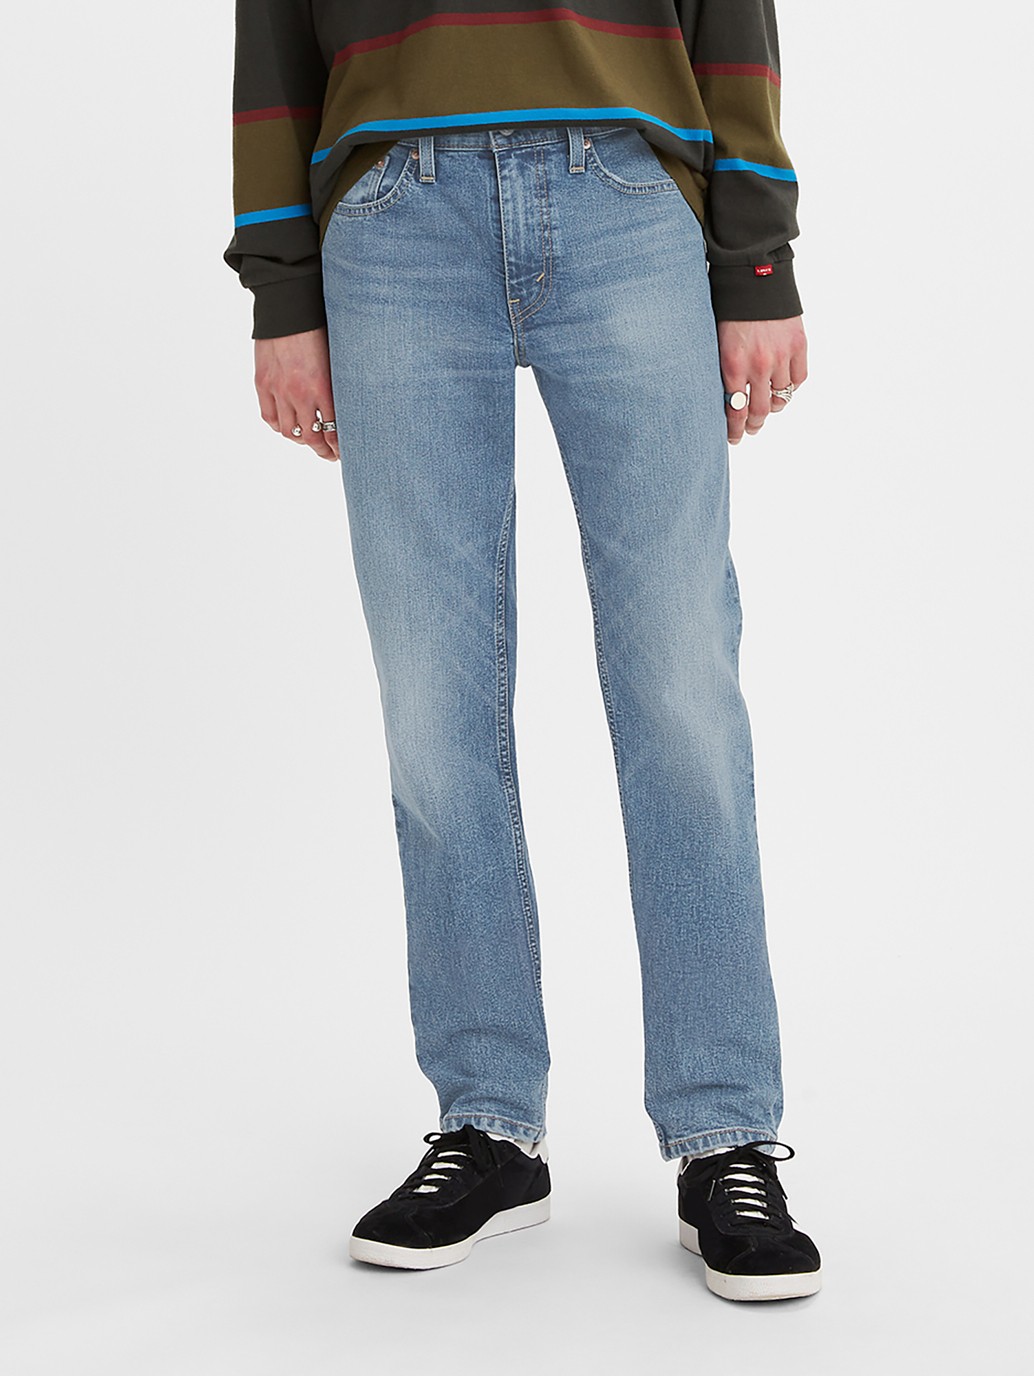 Buy Levi's® Men's 511™ Slim Jeans | Levi's® Official Online Store SG